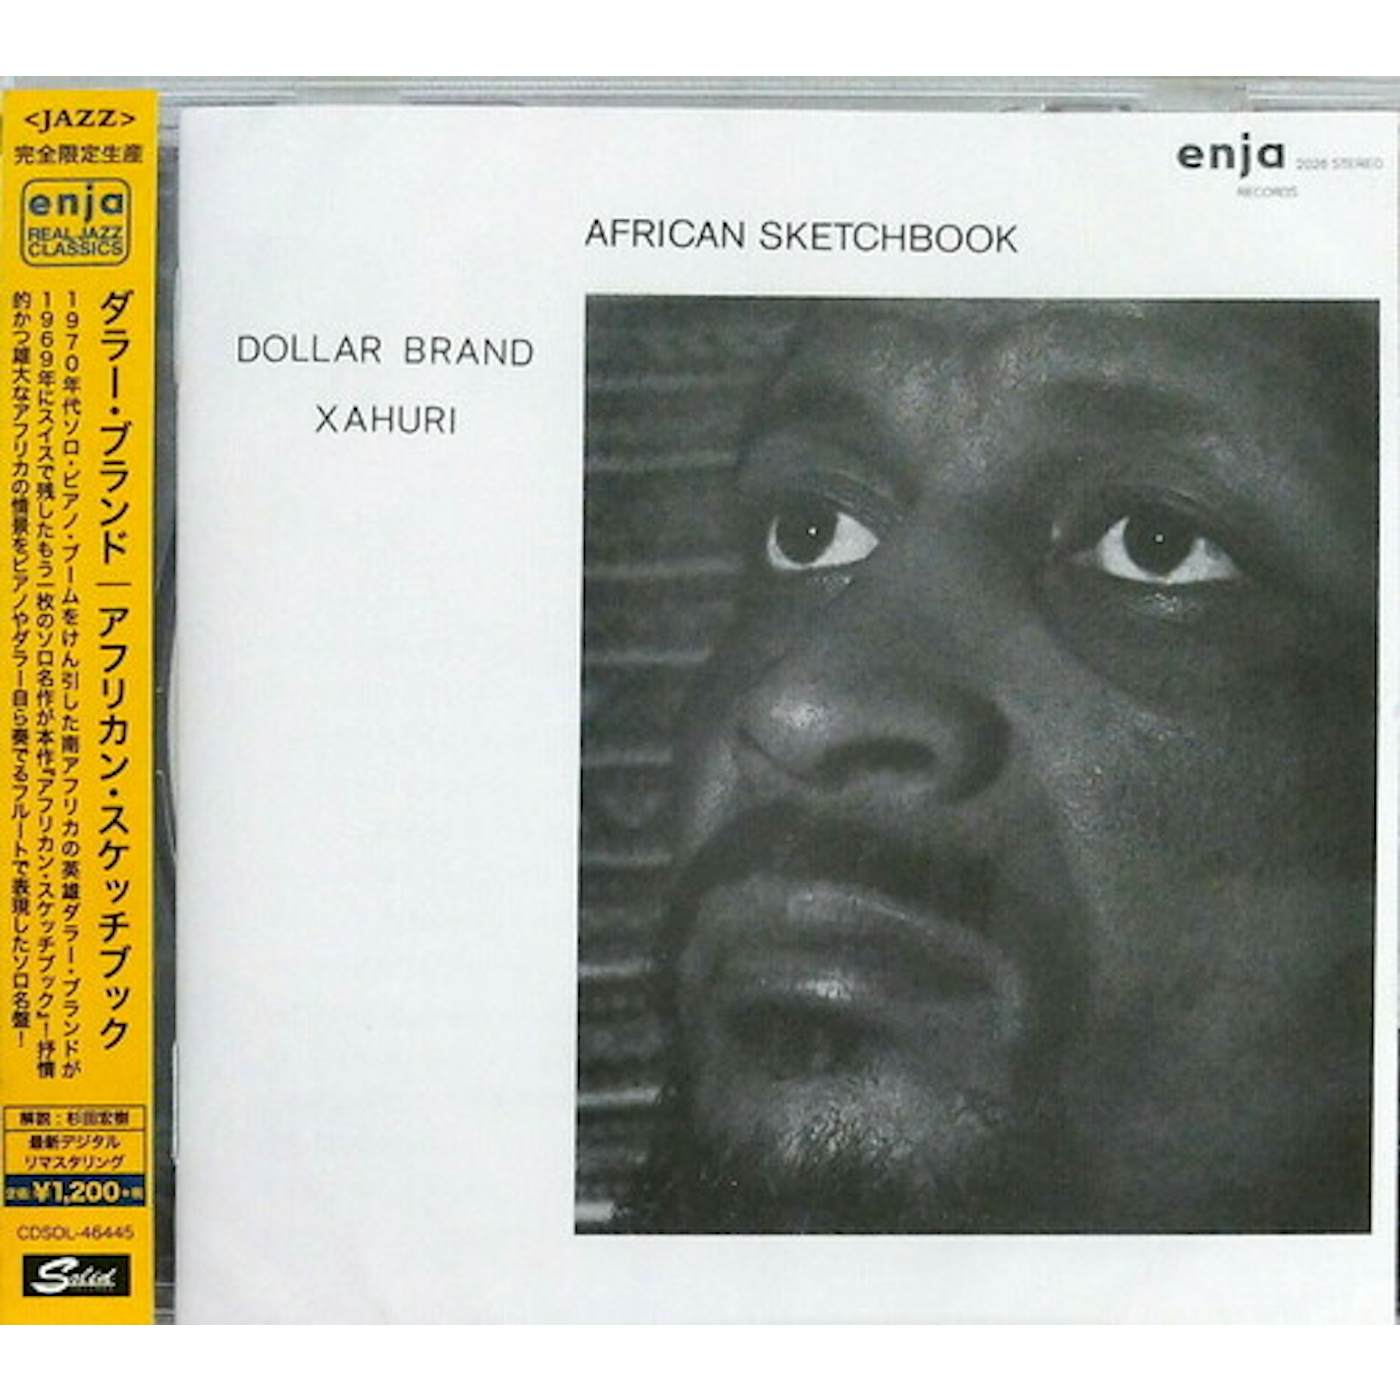 Dollar Brand AMERICAN SKETCHBOOK CD